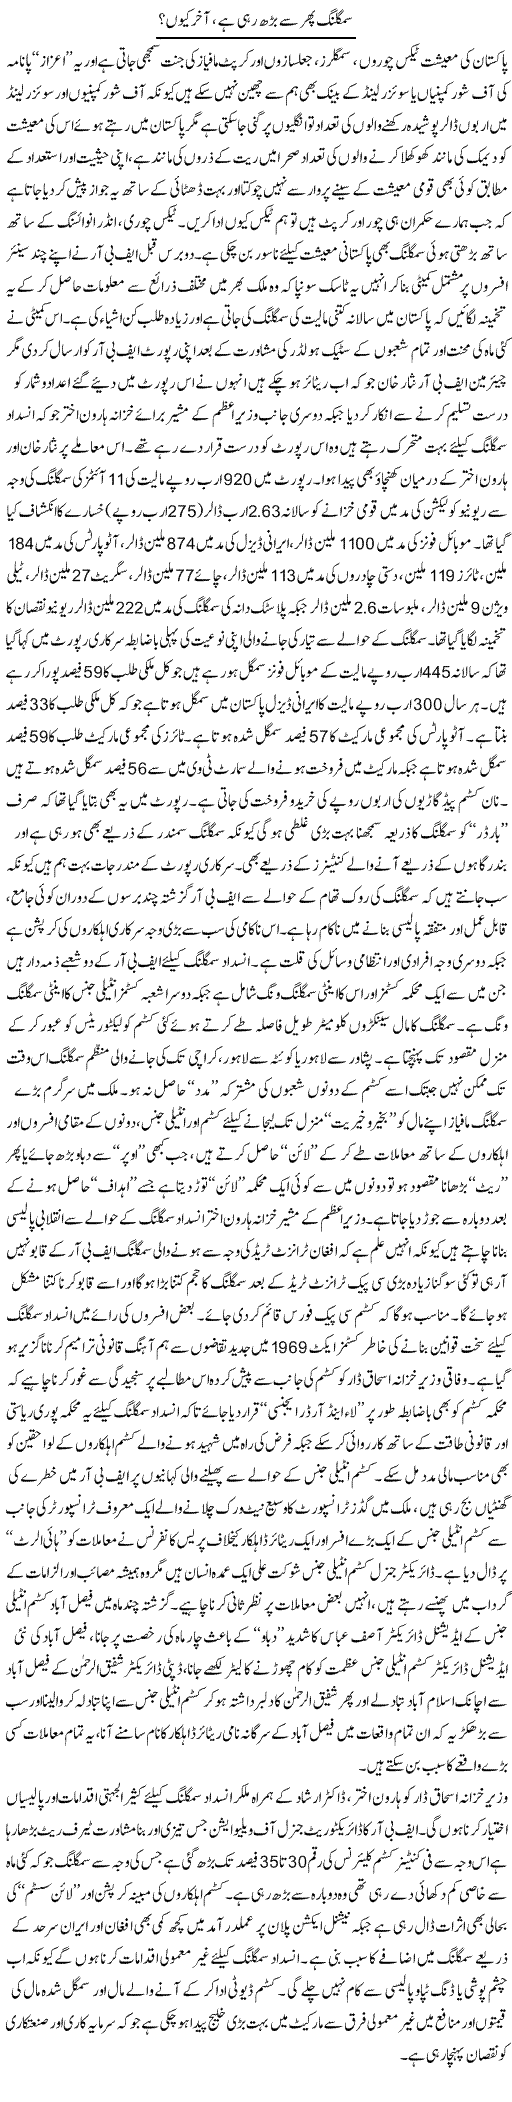 Smuggling Phir Se Barh Rahi Hai, Aakhir Kyun? | Rizwan Asif | Daily Urdu Columns